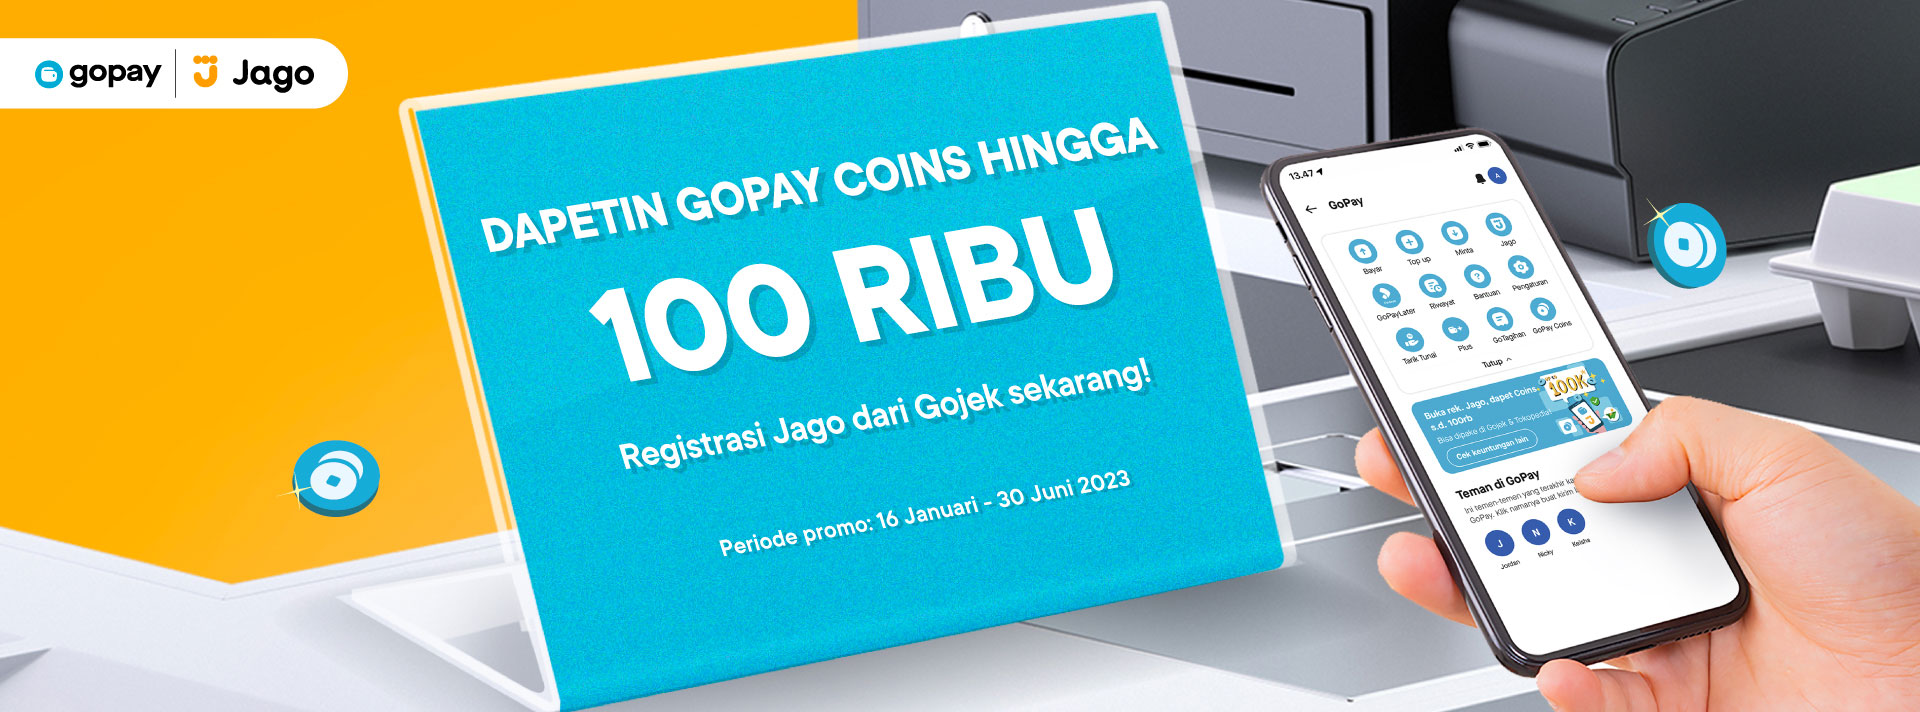 GoPay Jago - Dapet Gopay Coins hingga 100rb